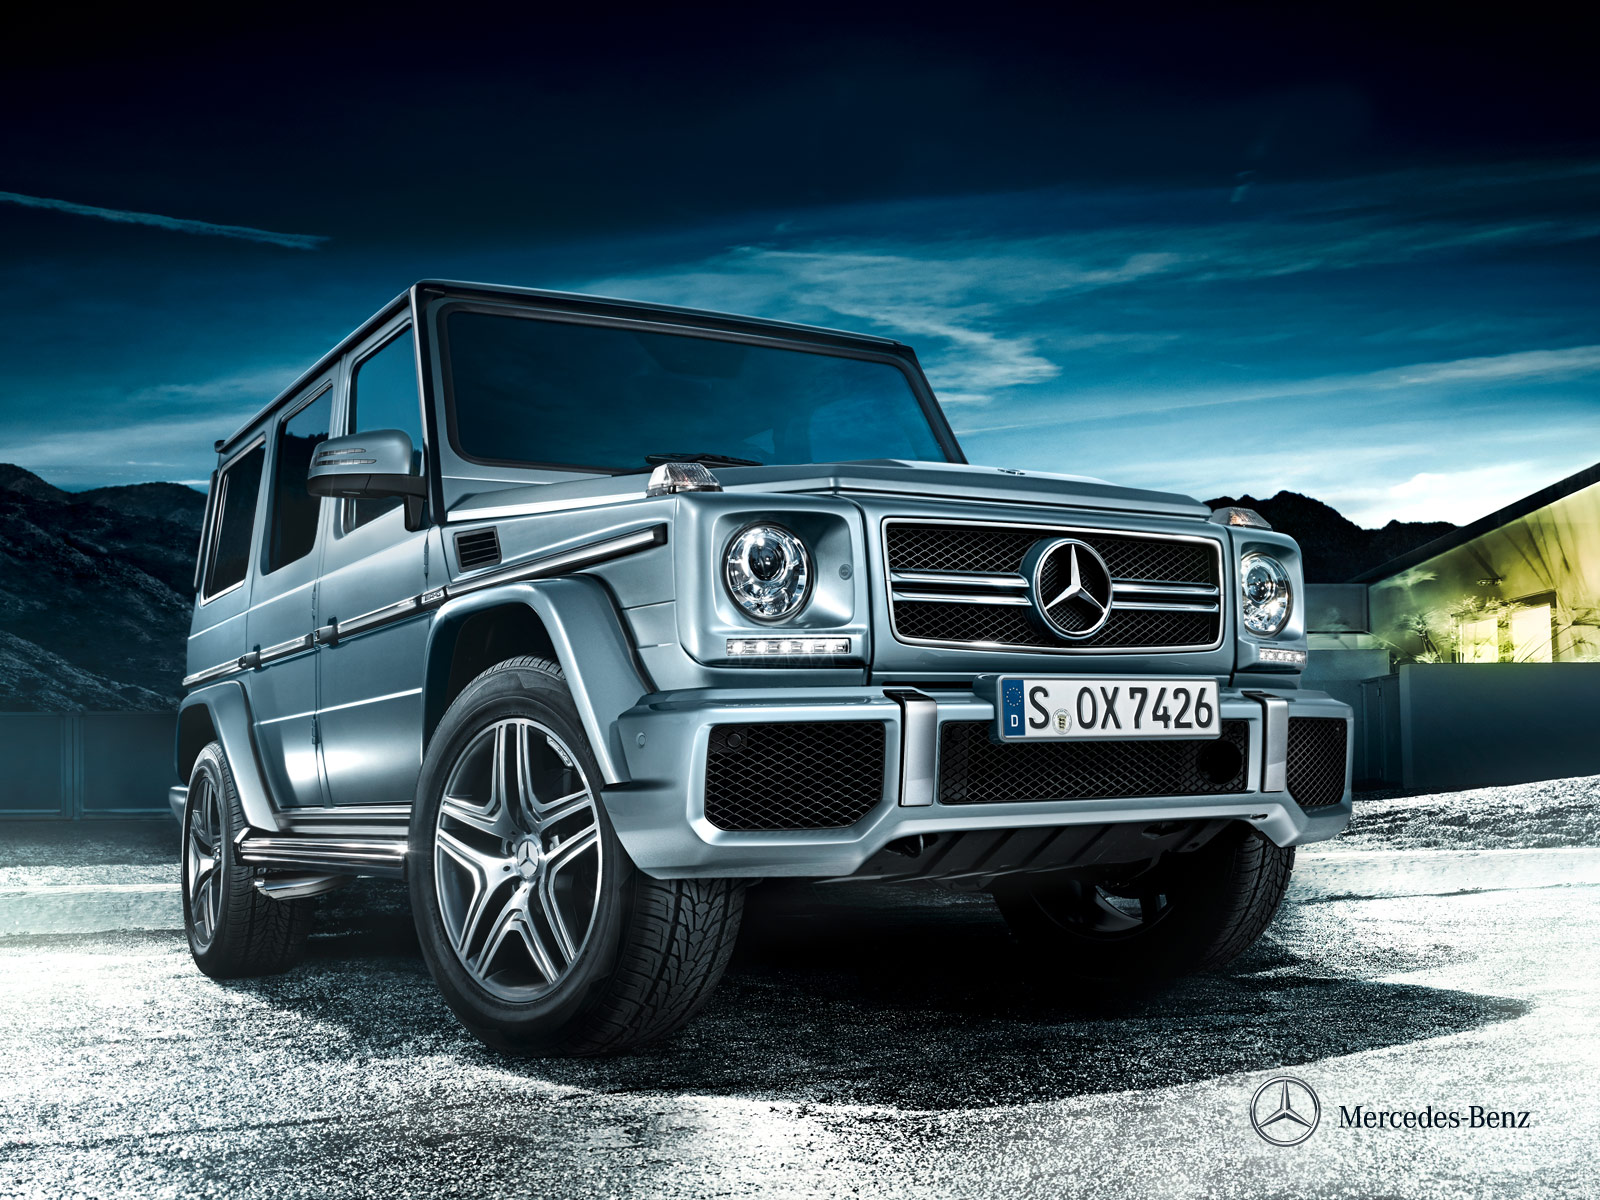 2014-Mercedes-Benz-G-Class-4-Door-Pictures